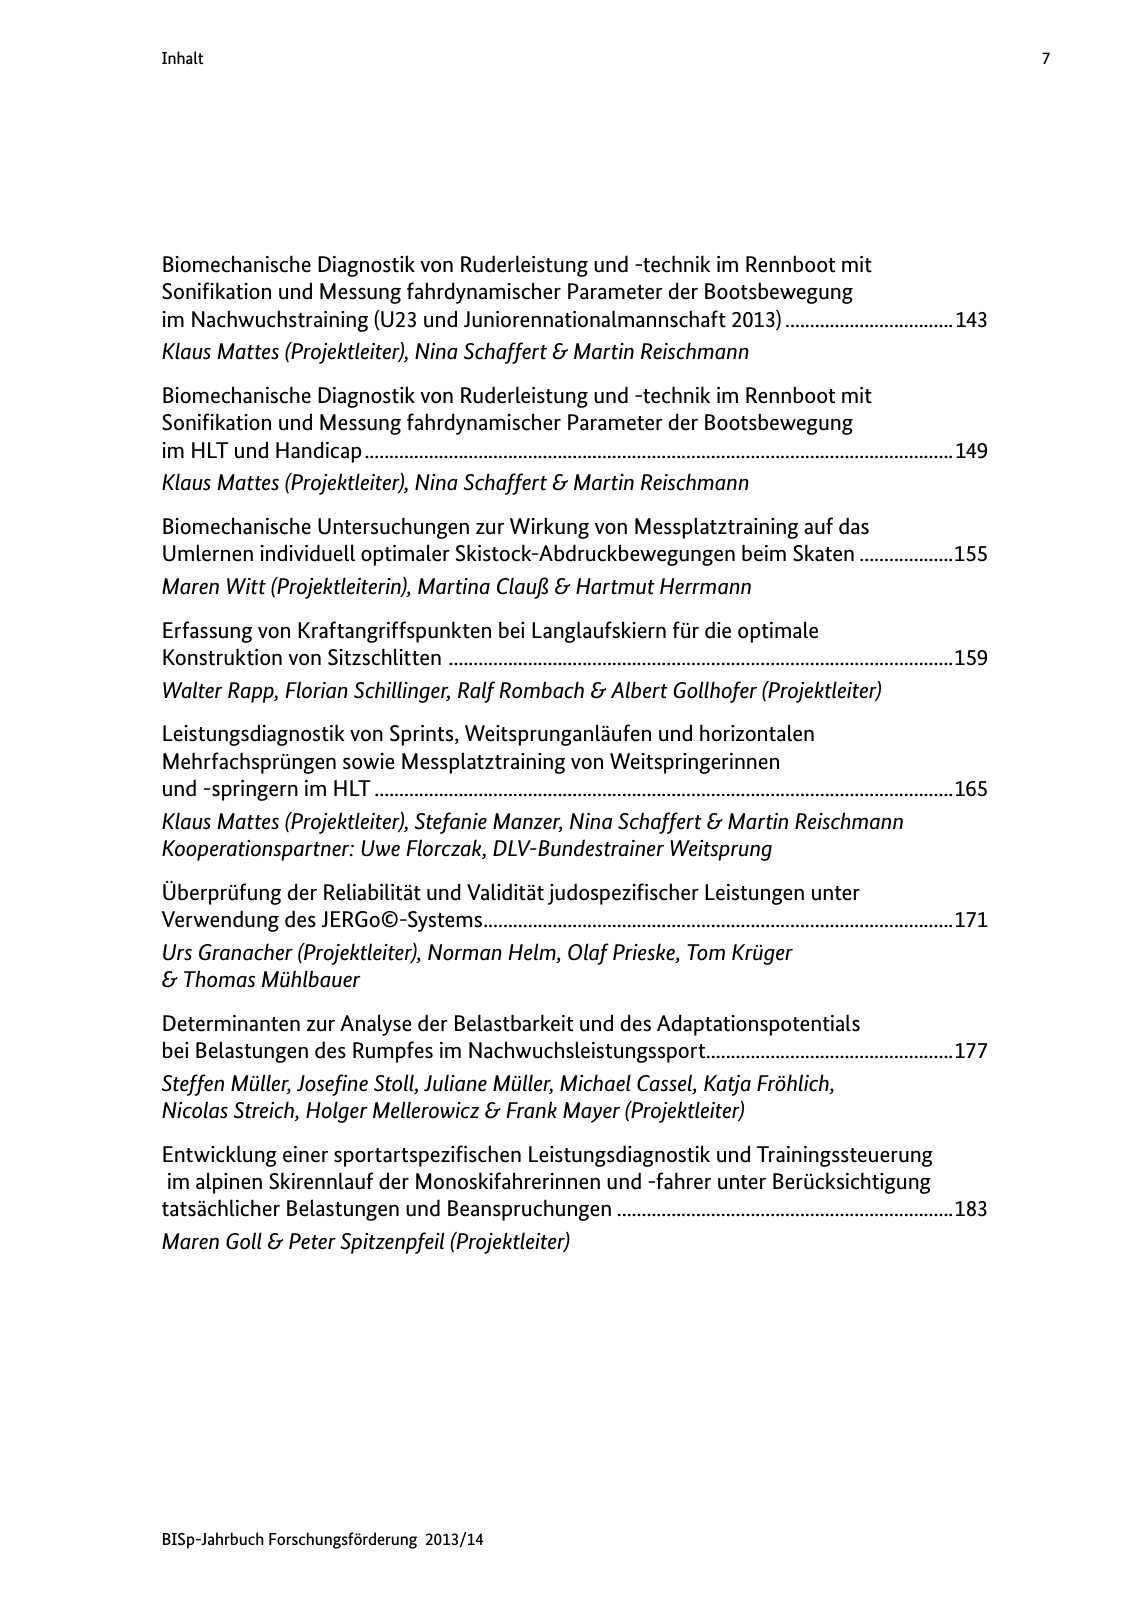 Vorschau BISp-Jahrbuch Forschungsförderung 2013/14 Seite 8